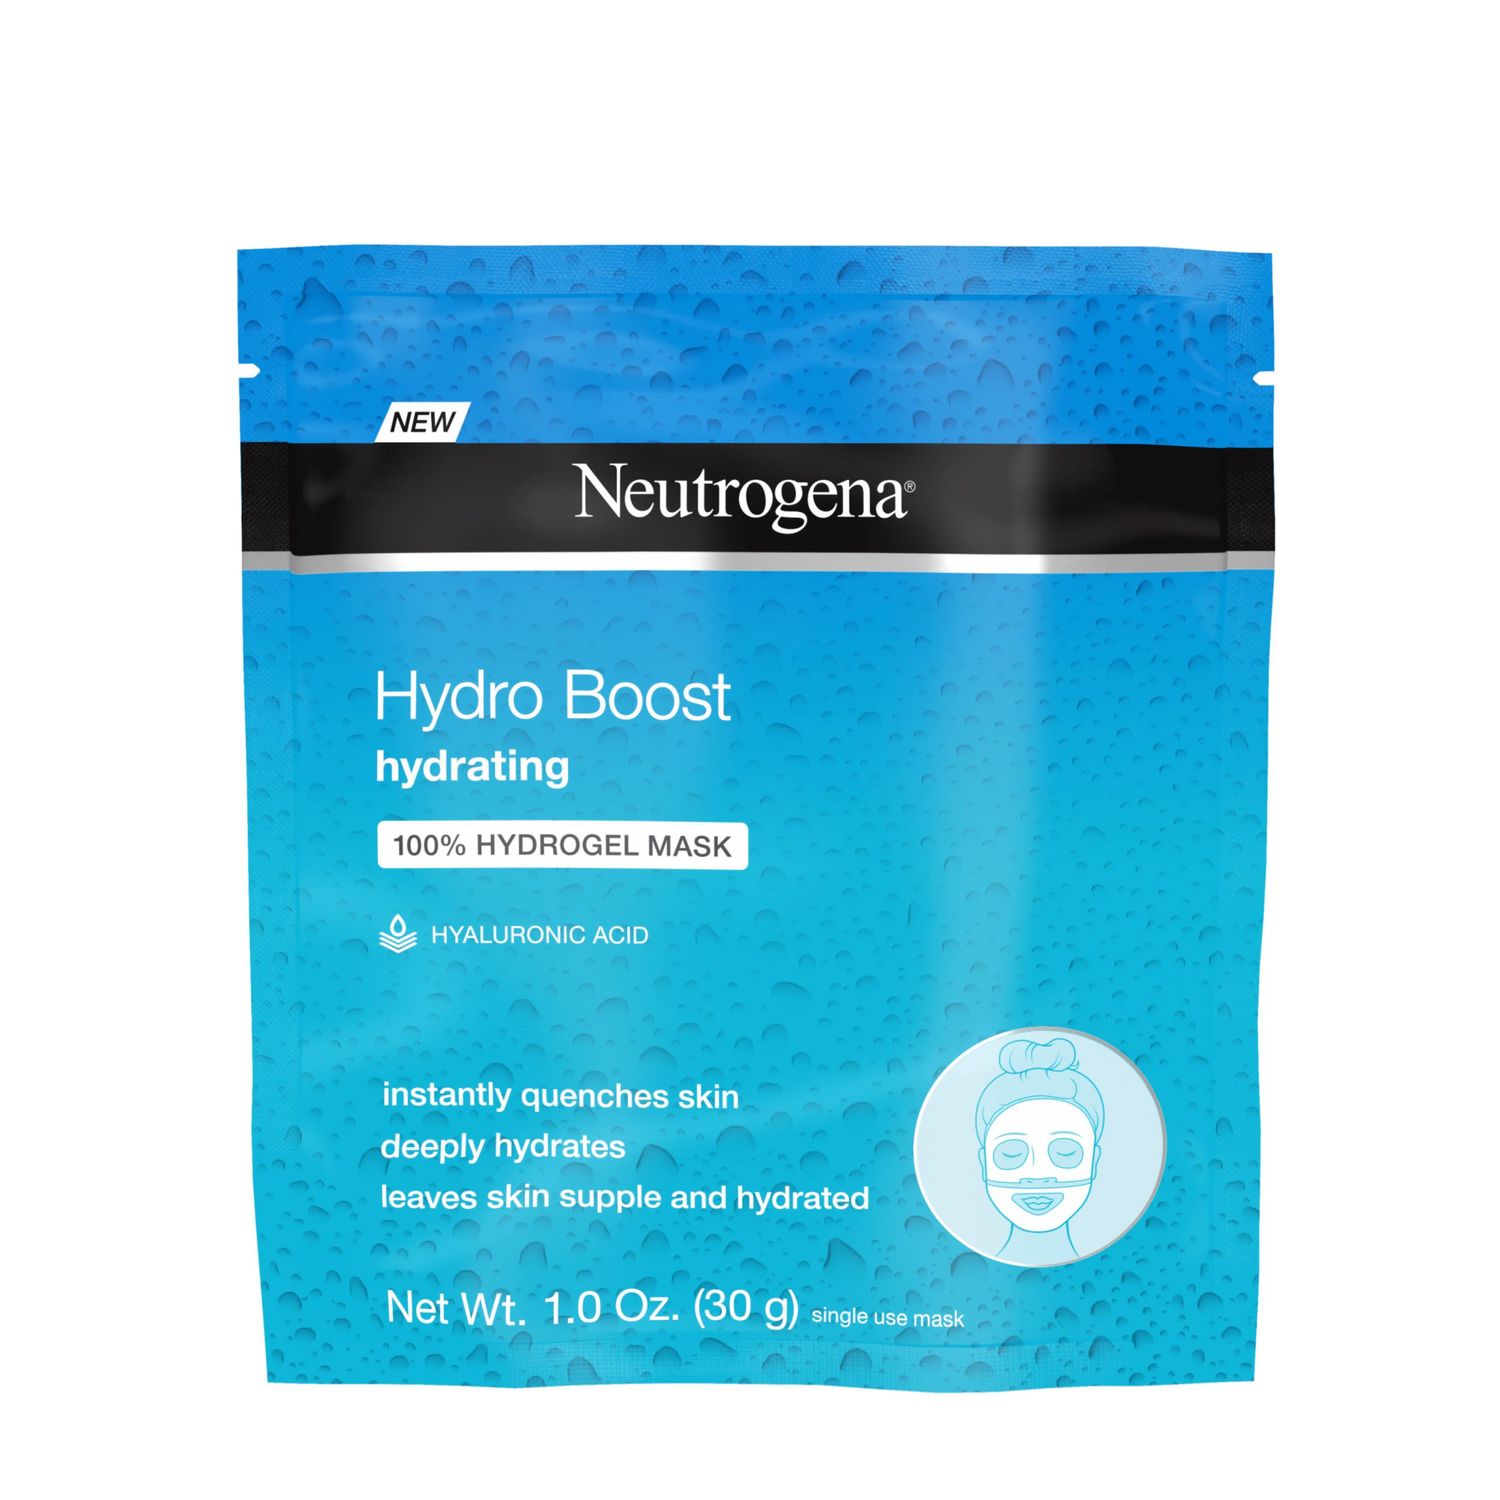 Buy Neutrogena Hydro Boost Hydrating 100% Hydrogel Mask - Purplle